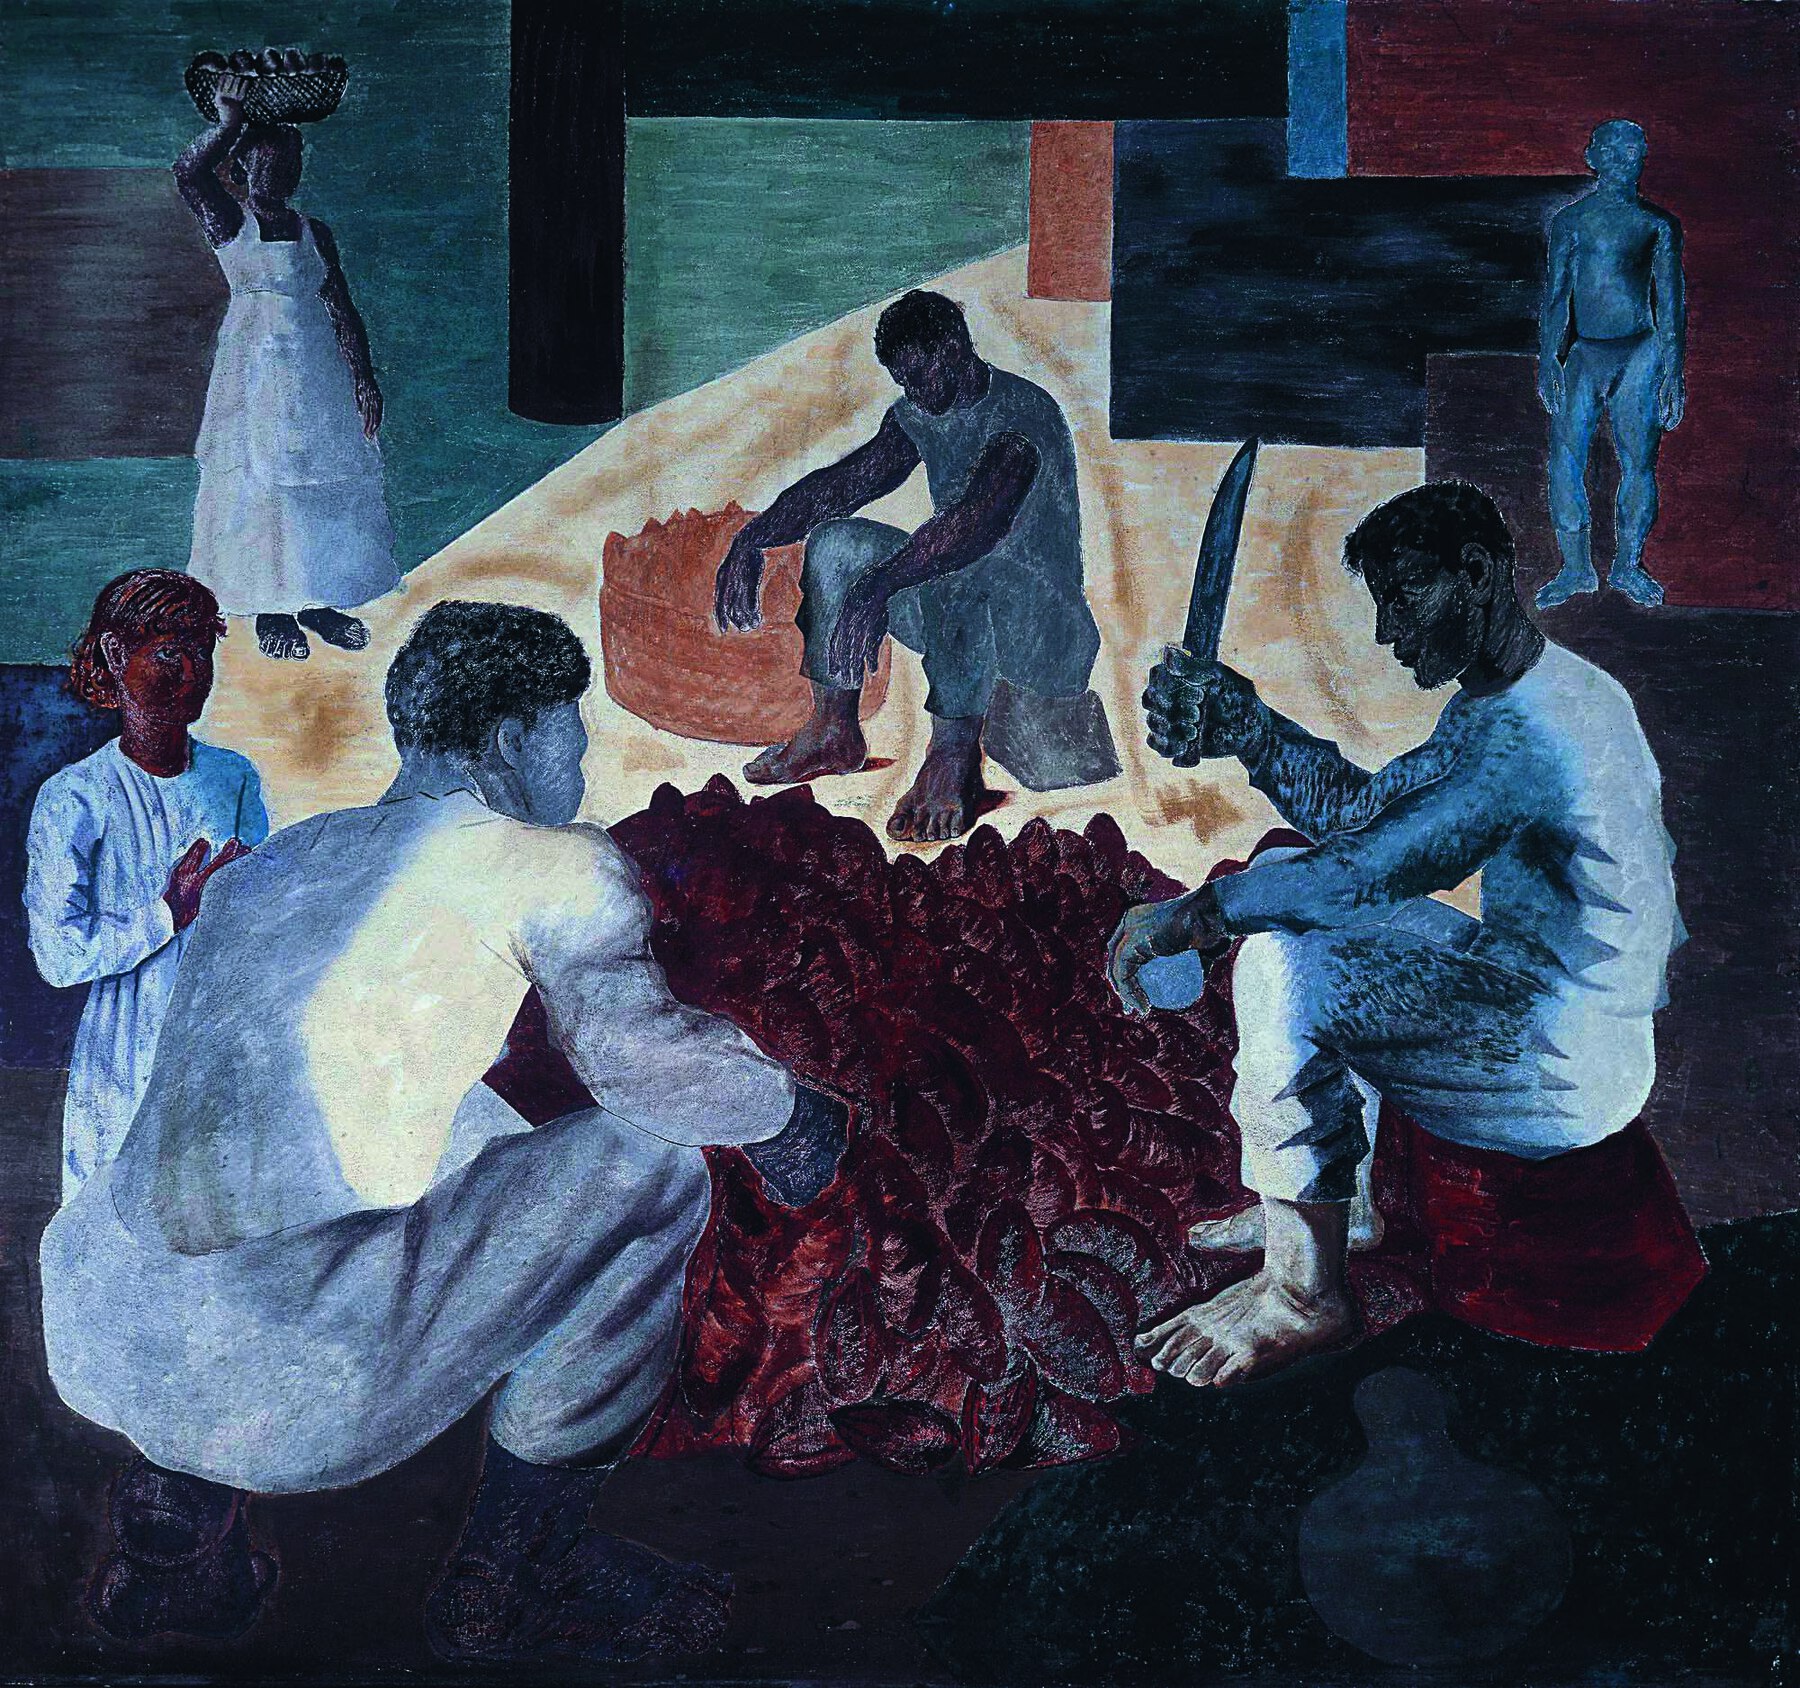 Fotografia. Pintura mural que mostra trabalhadores rurais. Três homens, de de roupas claras, estão sentados ao redor de uma pilha de frutos de cacau. Um deles utiliza um facão. À esquerda, no primeiro plano, uma figura feminina observa o trabalho. Ao fundo, à esquerda, uma mulher de vestido branco comprido equilibra uma vasilha na cabeça.